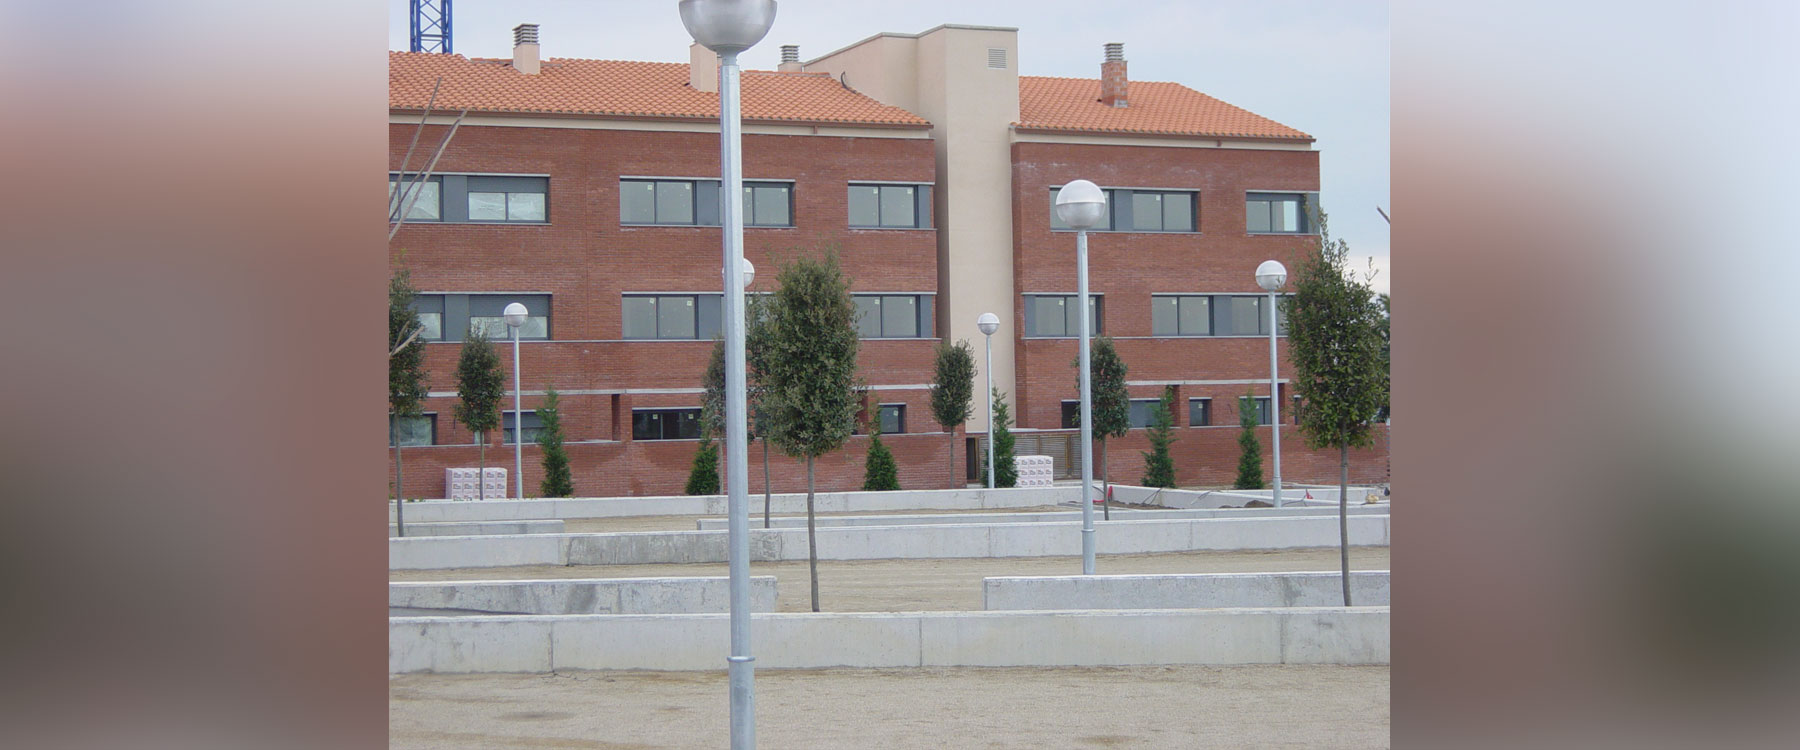 Conjunto Residencial en Moja – Vilafranca del Penedès